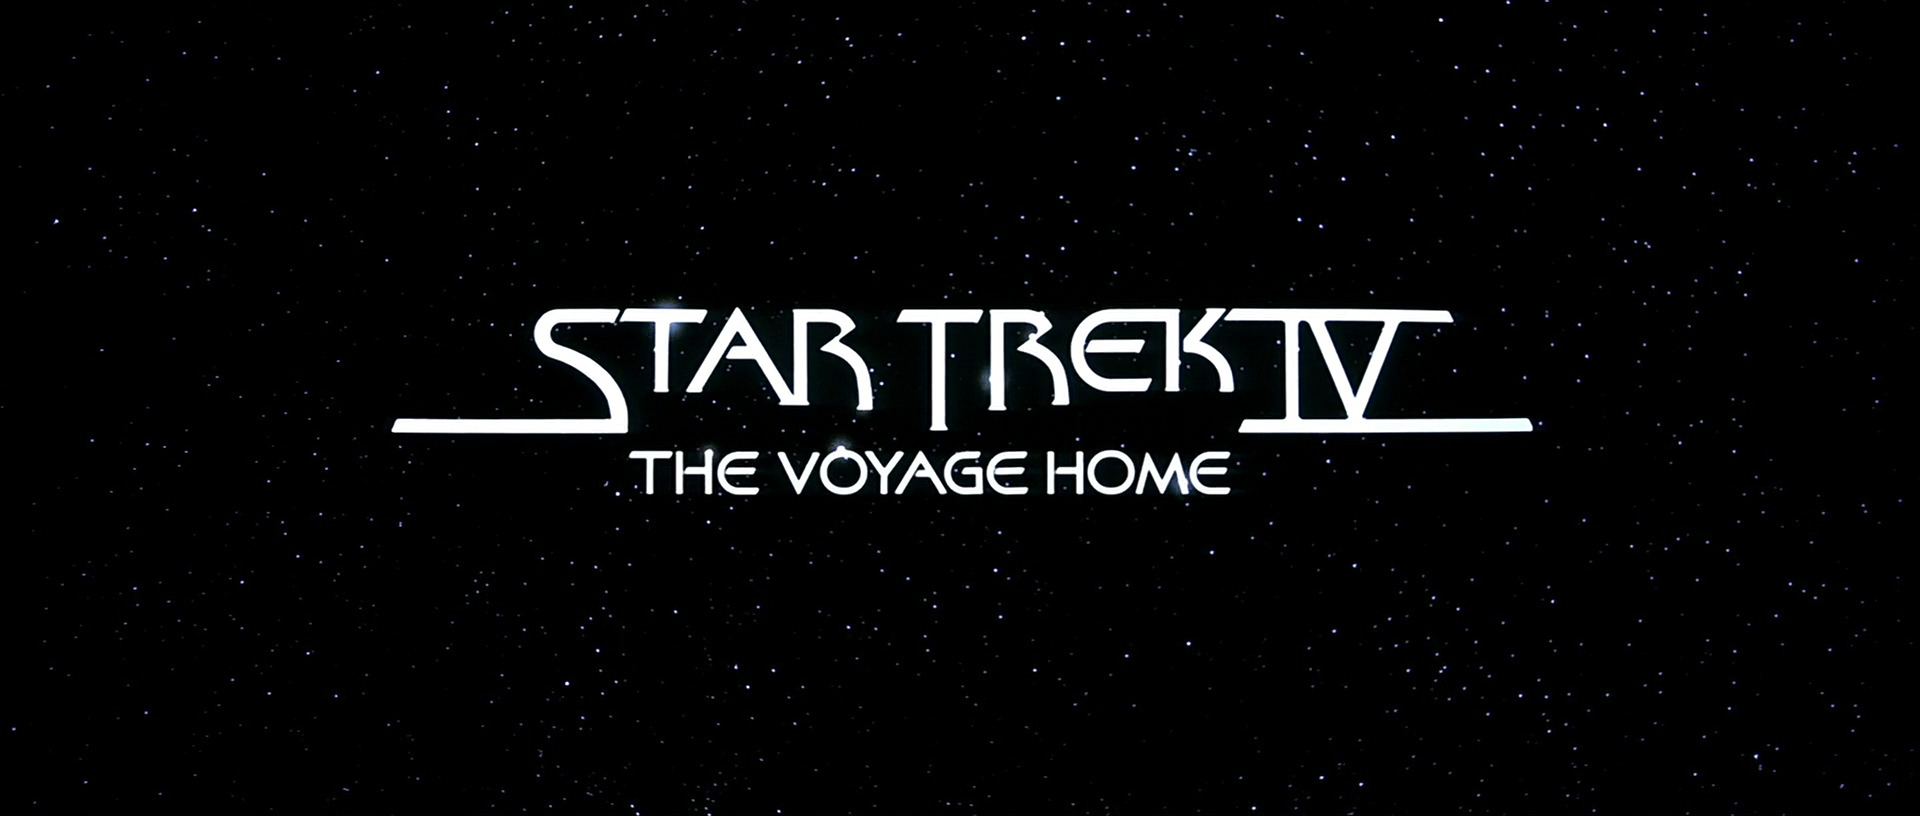 star trek voyager screencaps